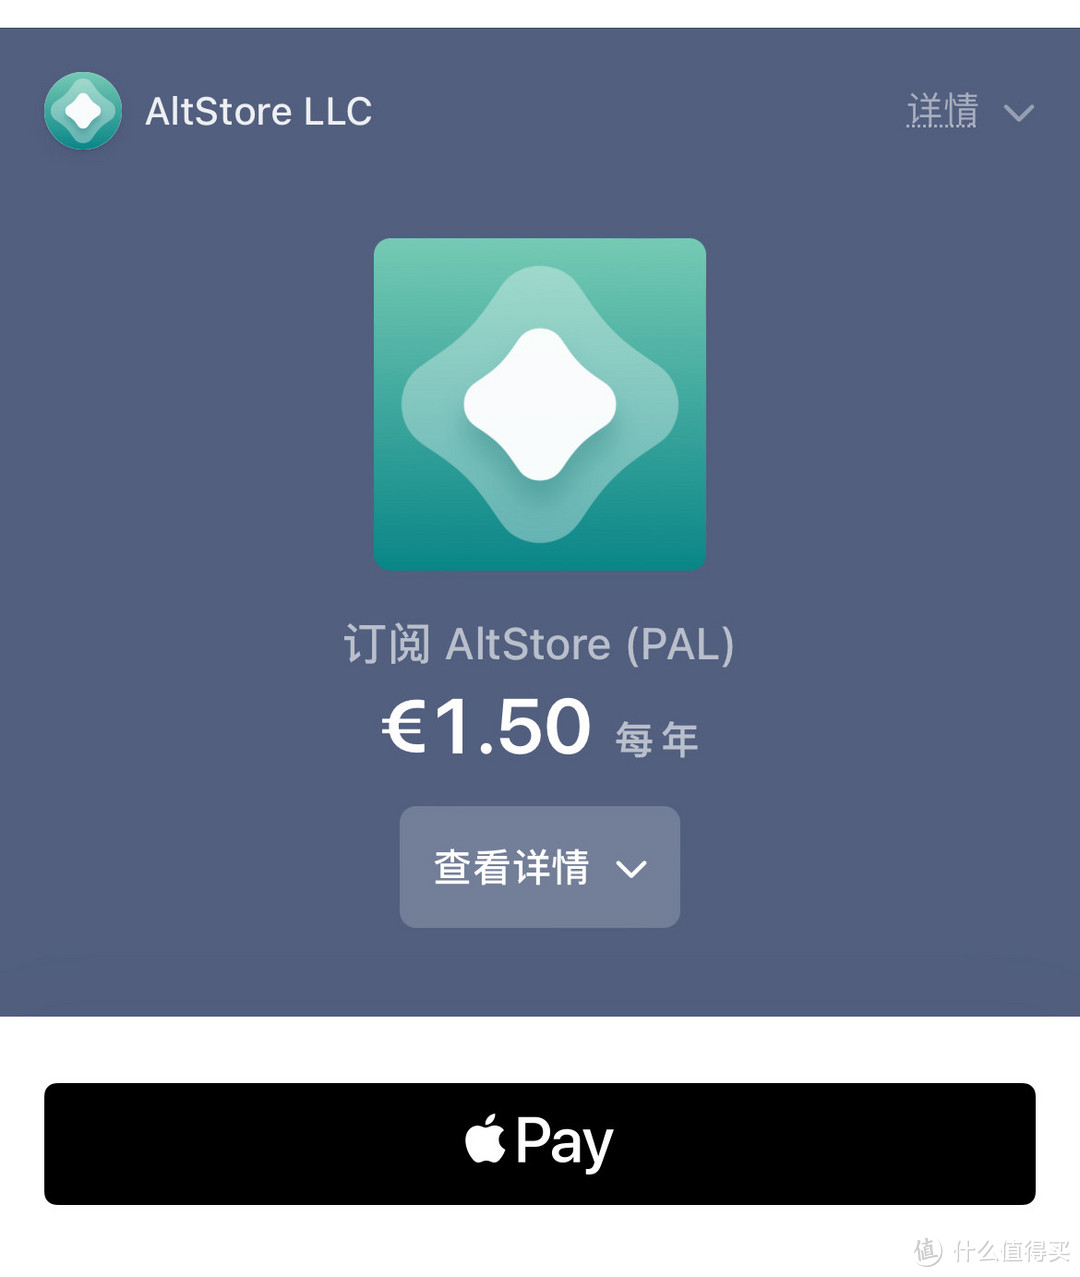 第三方 iPhone 应用商店 AltStore PAL 现已在欧洲推出，需要付费订阅！